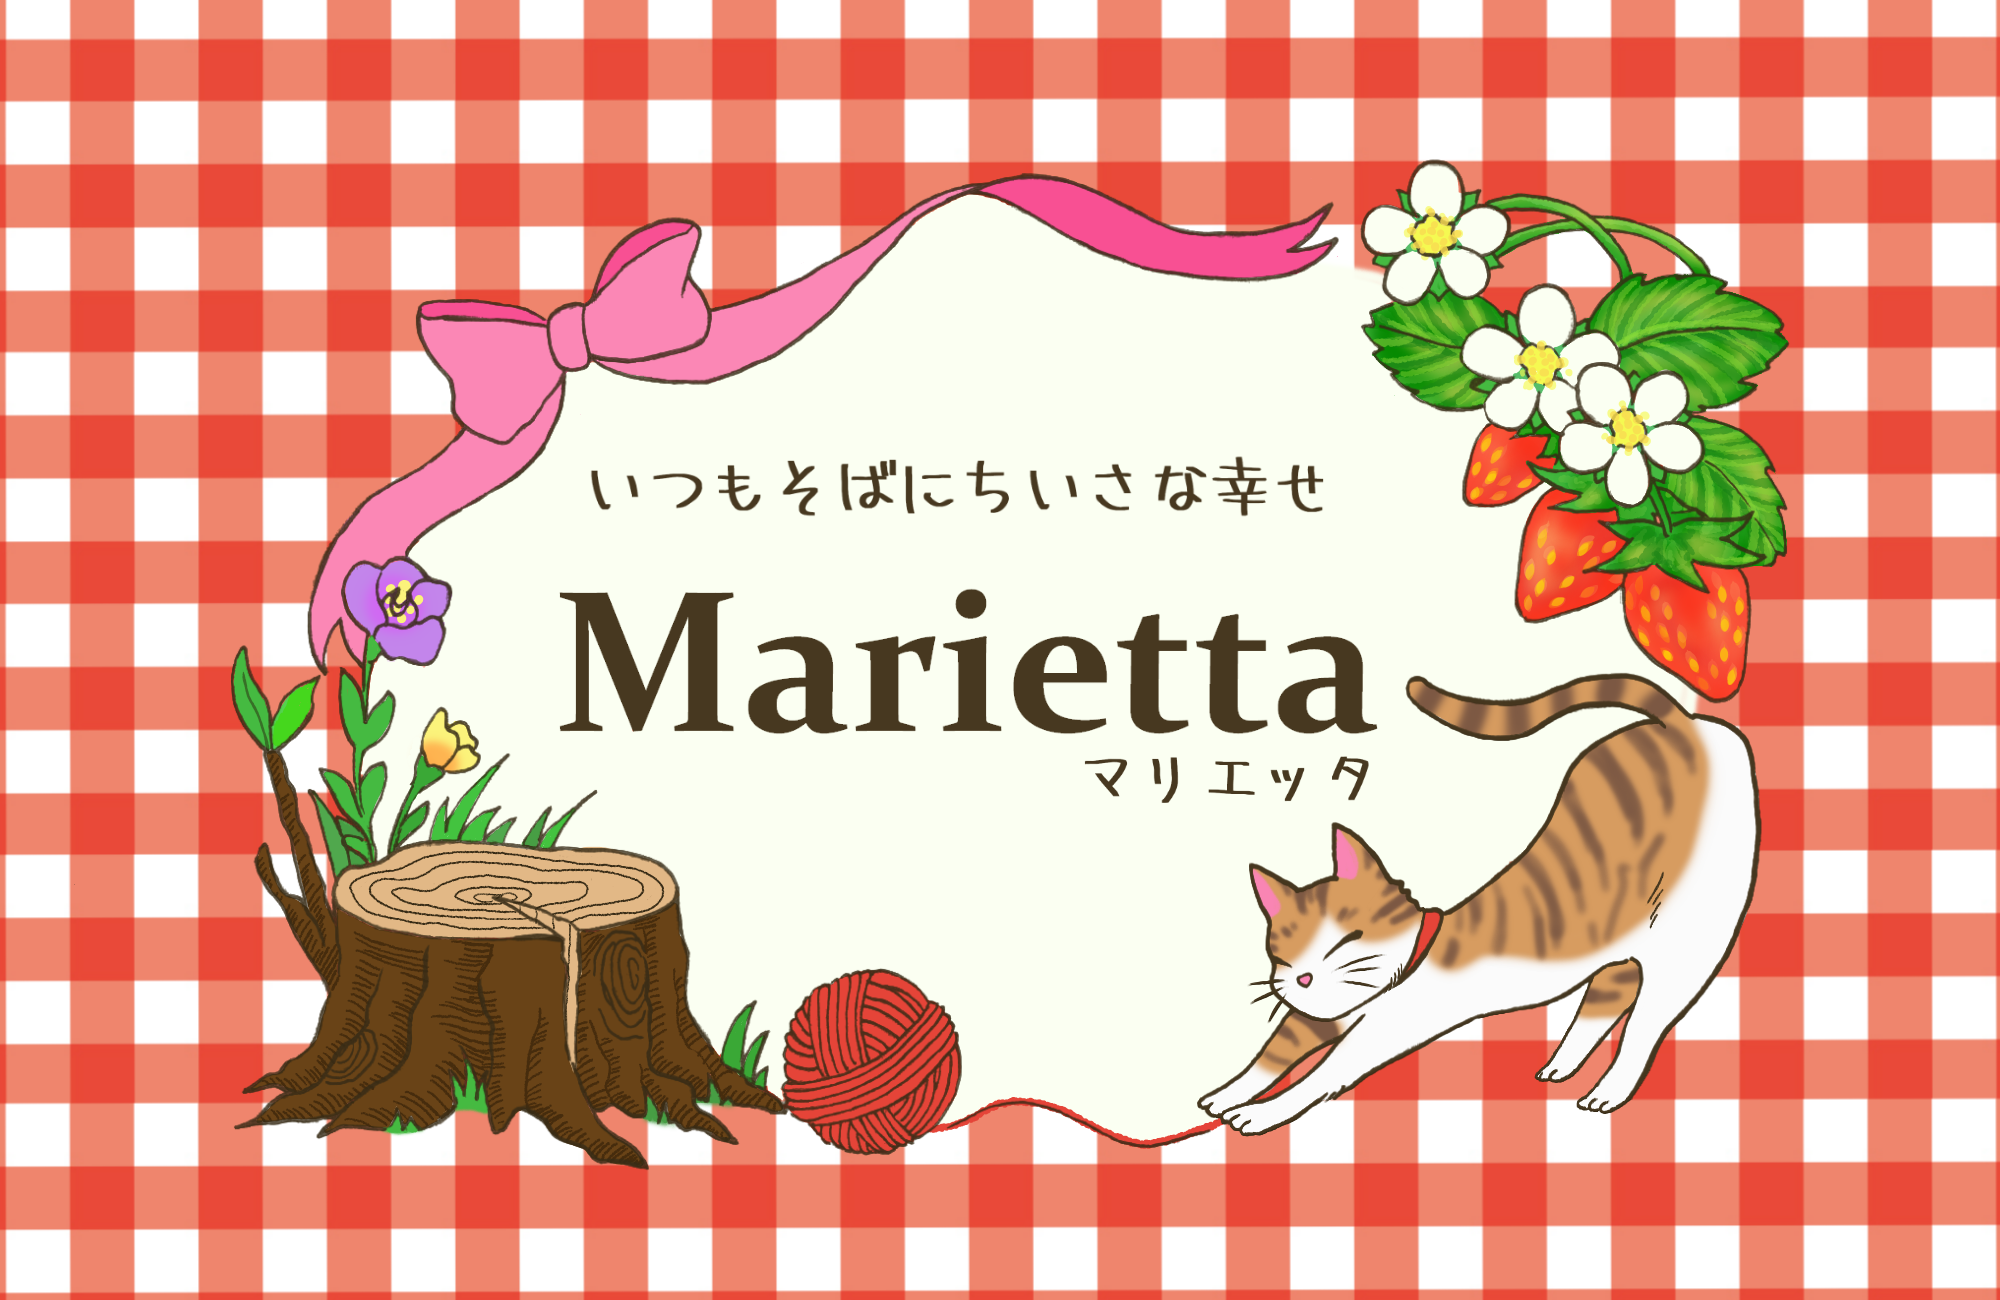 Marietta.